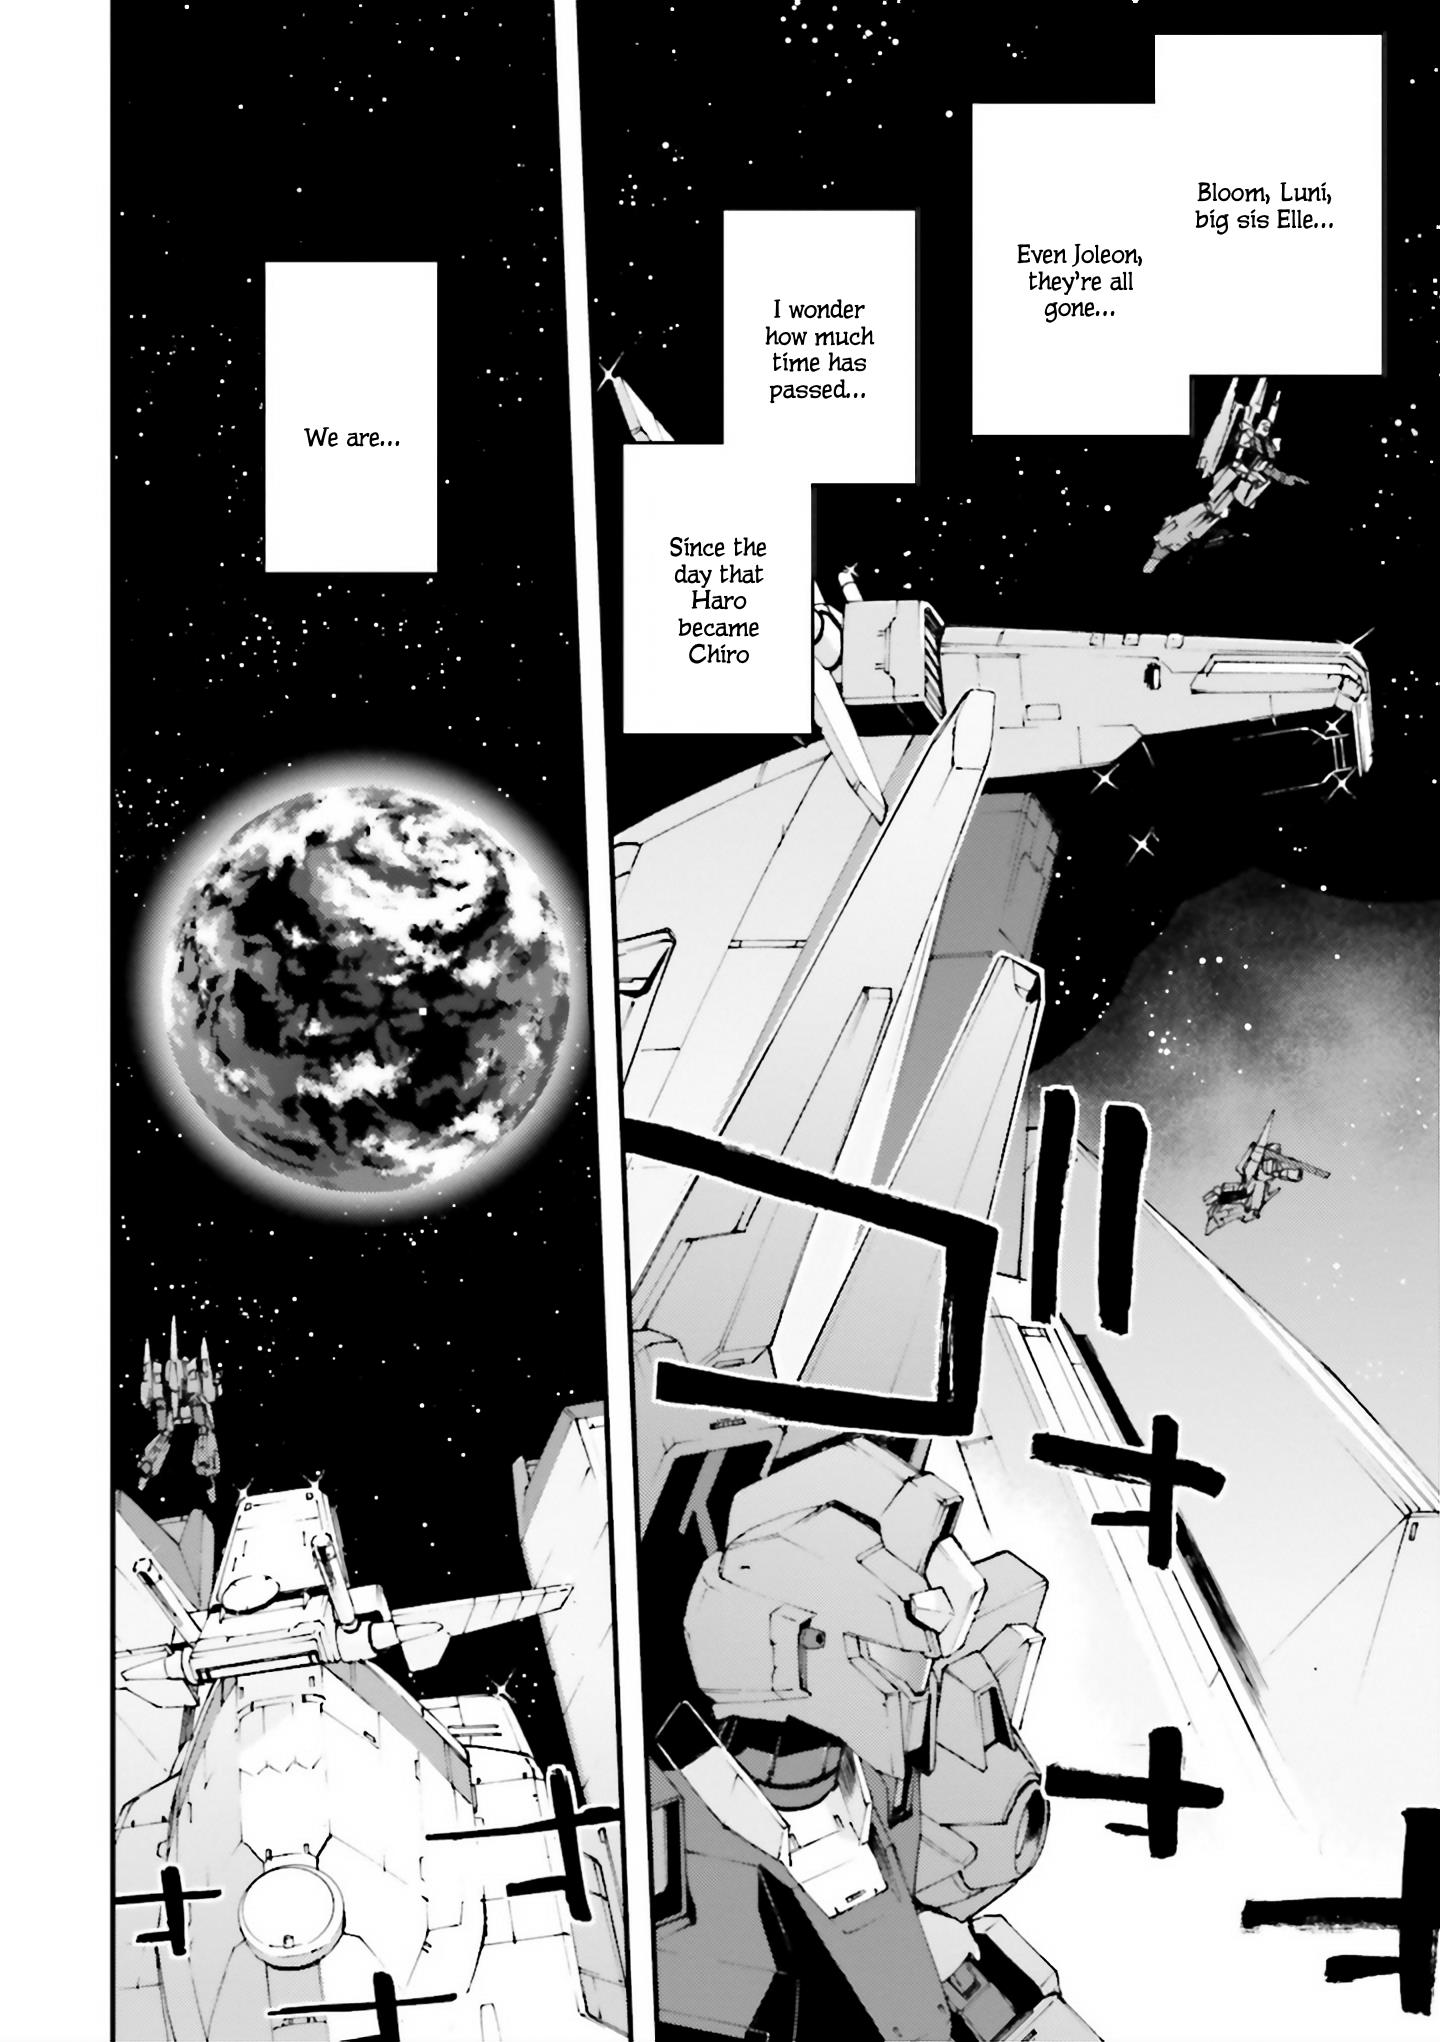 Mobile Suit Gundam U.c.0096 - Last Sun - Page 2